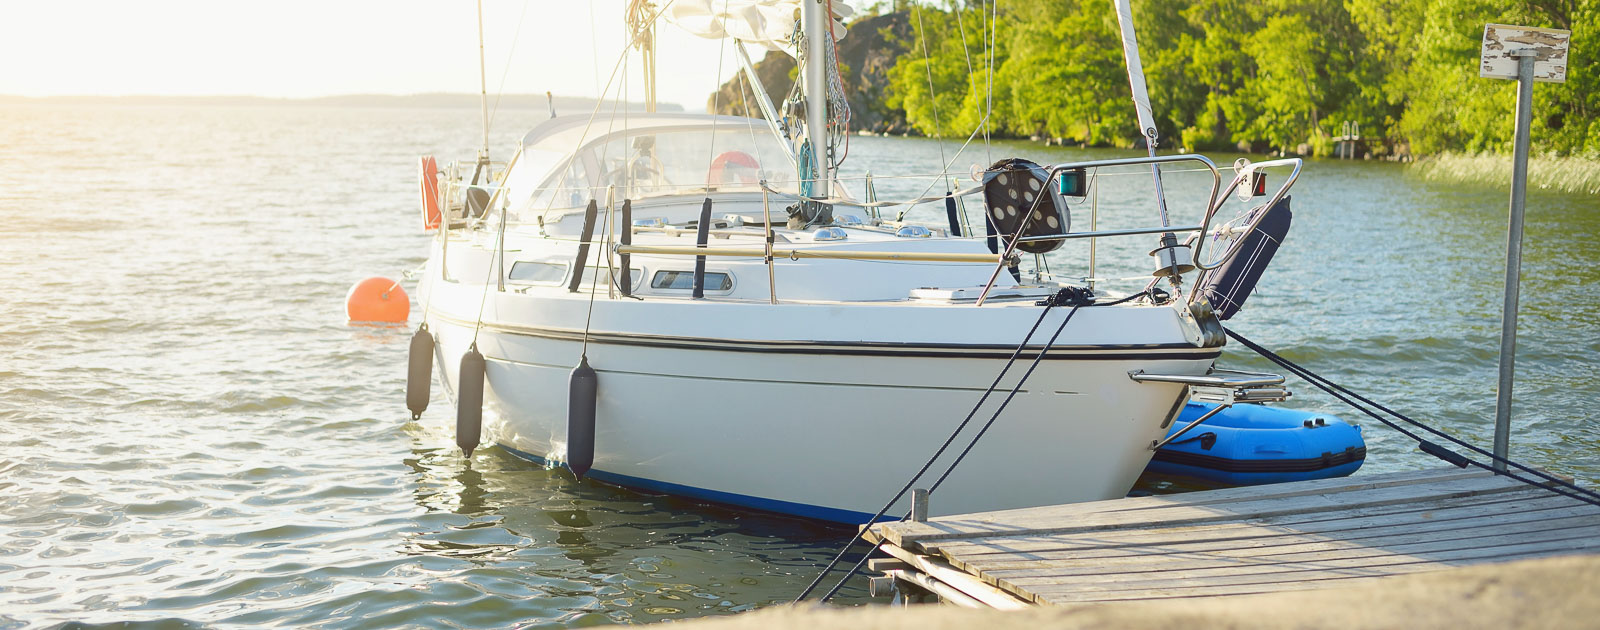 Lees de veilig varen checklist voordat je een boot huurt